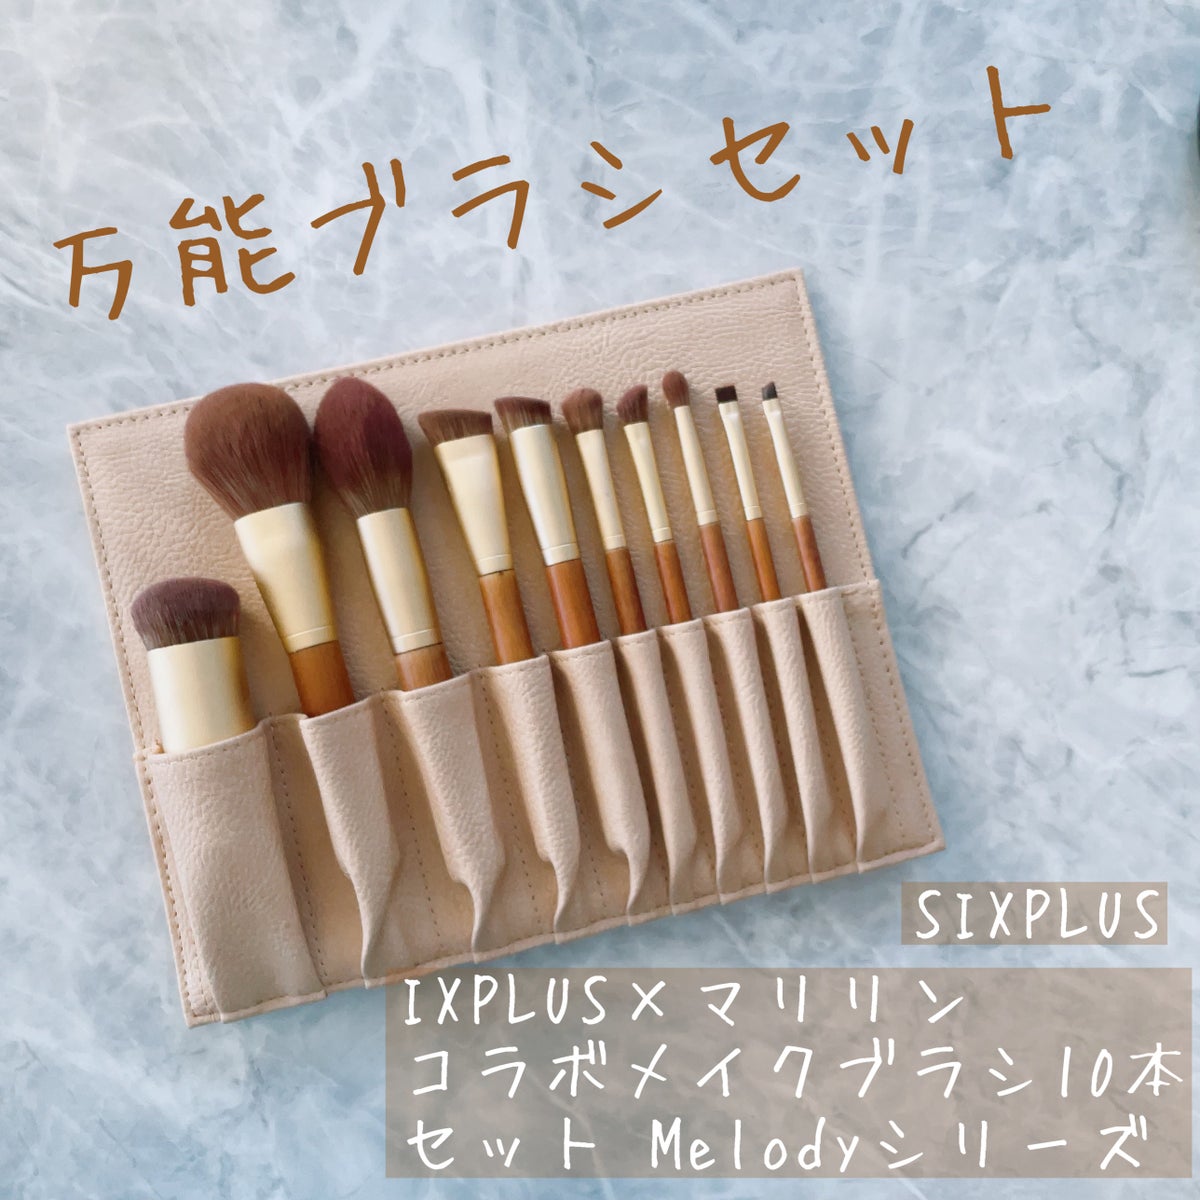 SIXPLUS×マリリン コラボメイクブラシ10本セット Melodyシリーズ ...